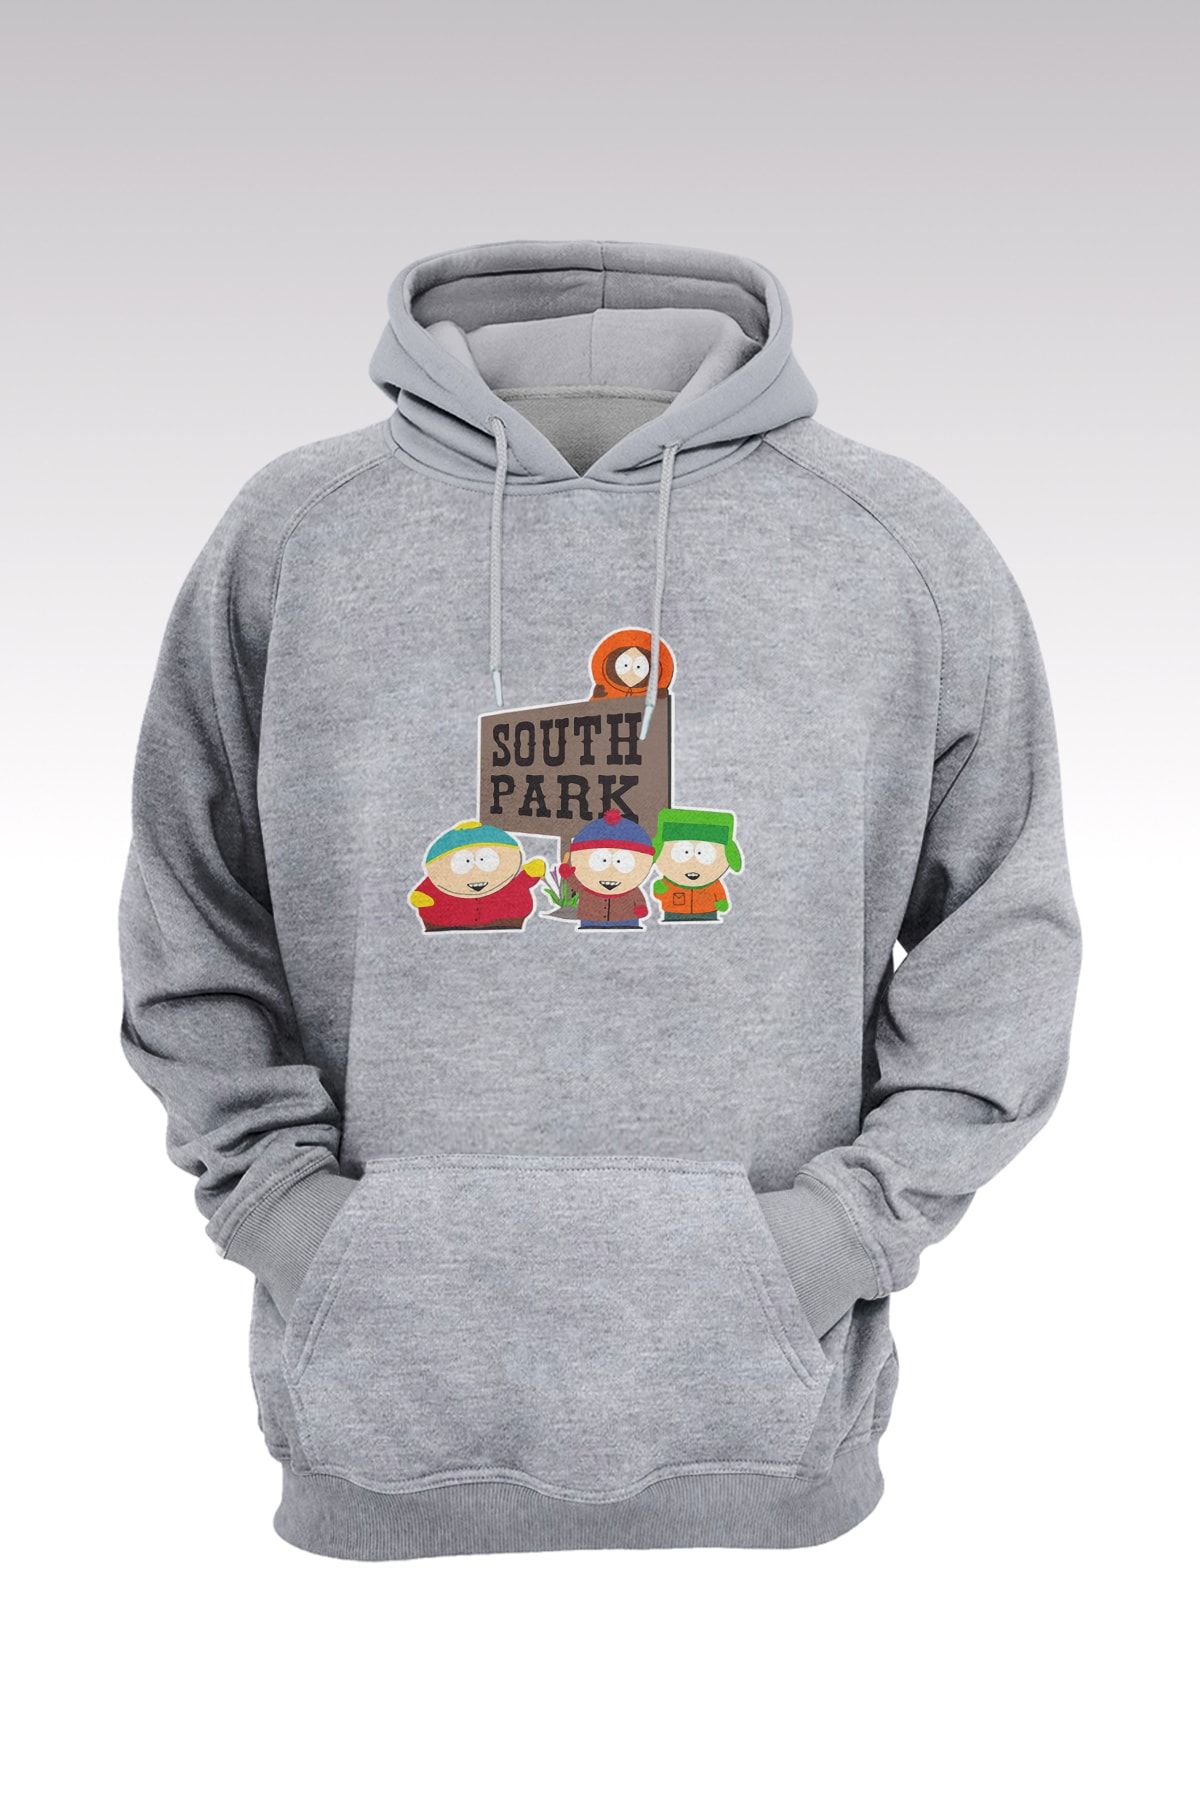 Genel Markalar South Park 154 Gri Kapşonlu Sweatshirt - Hoodie